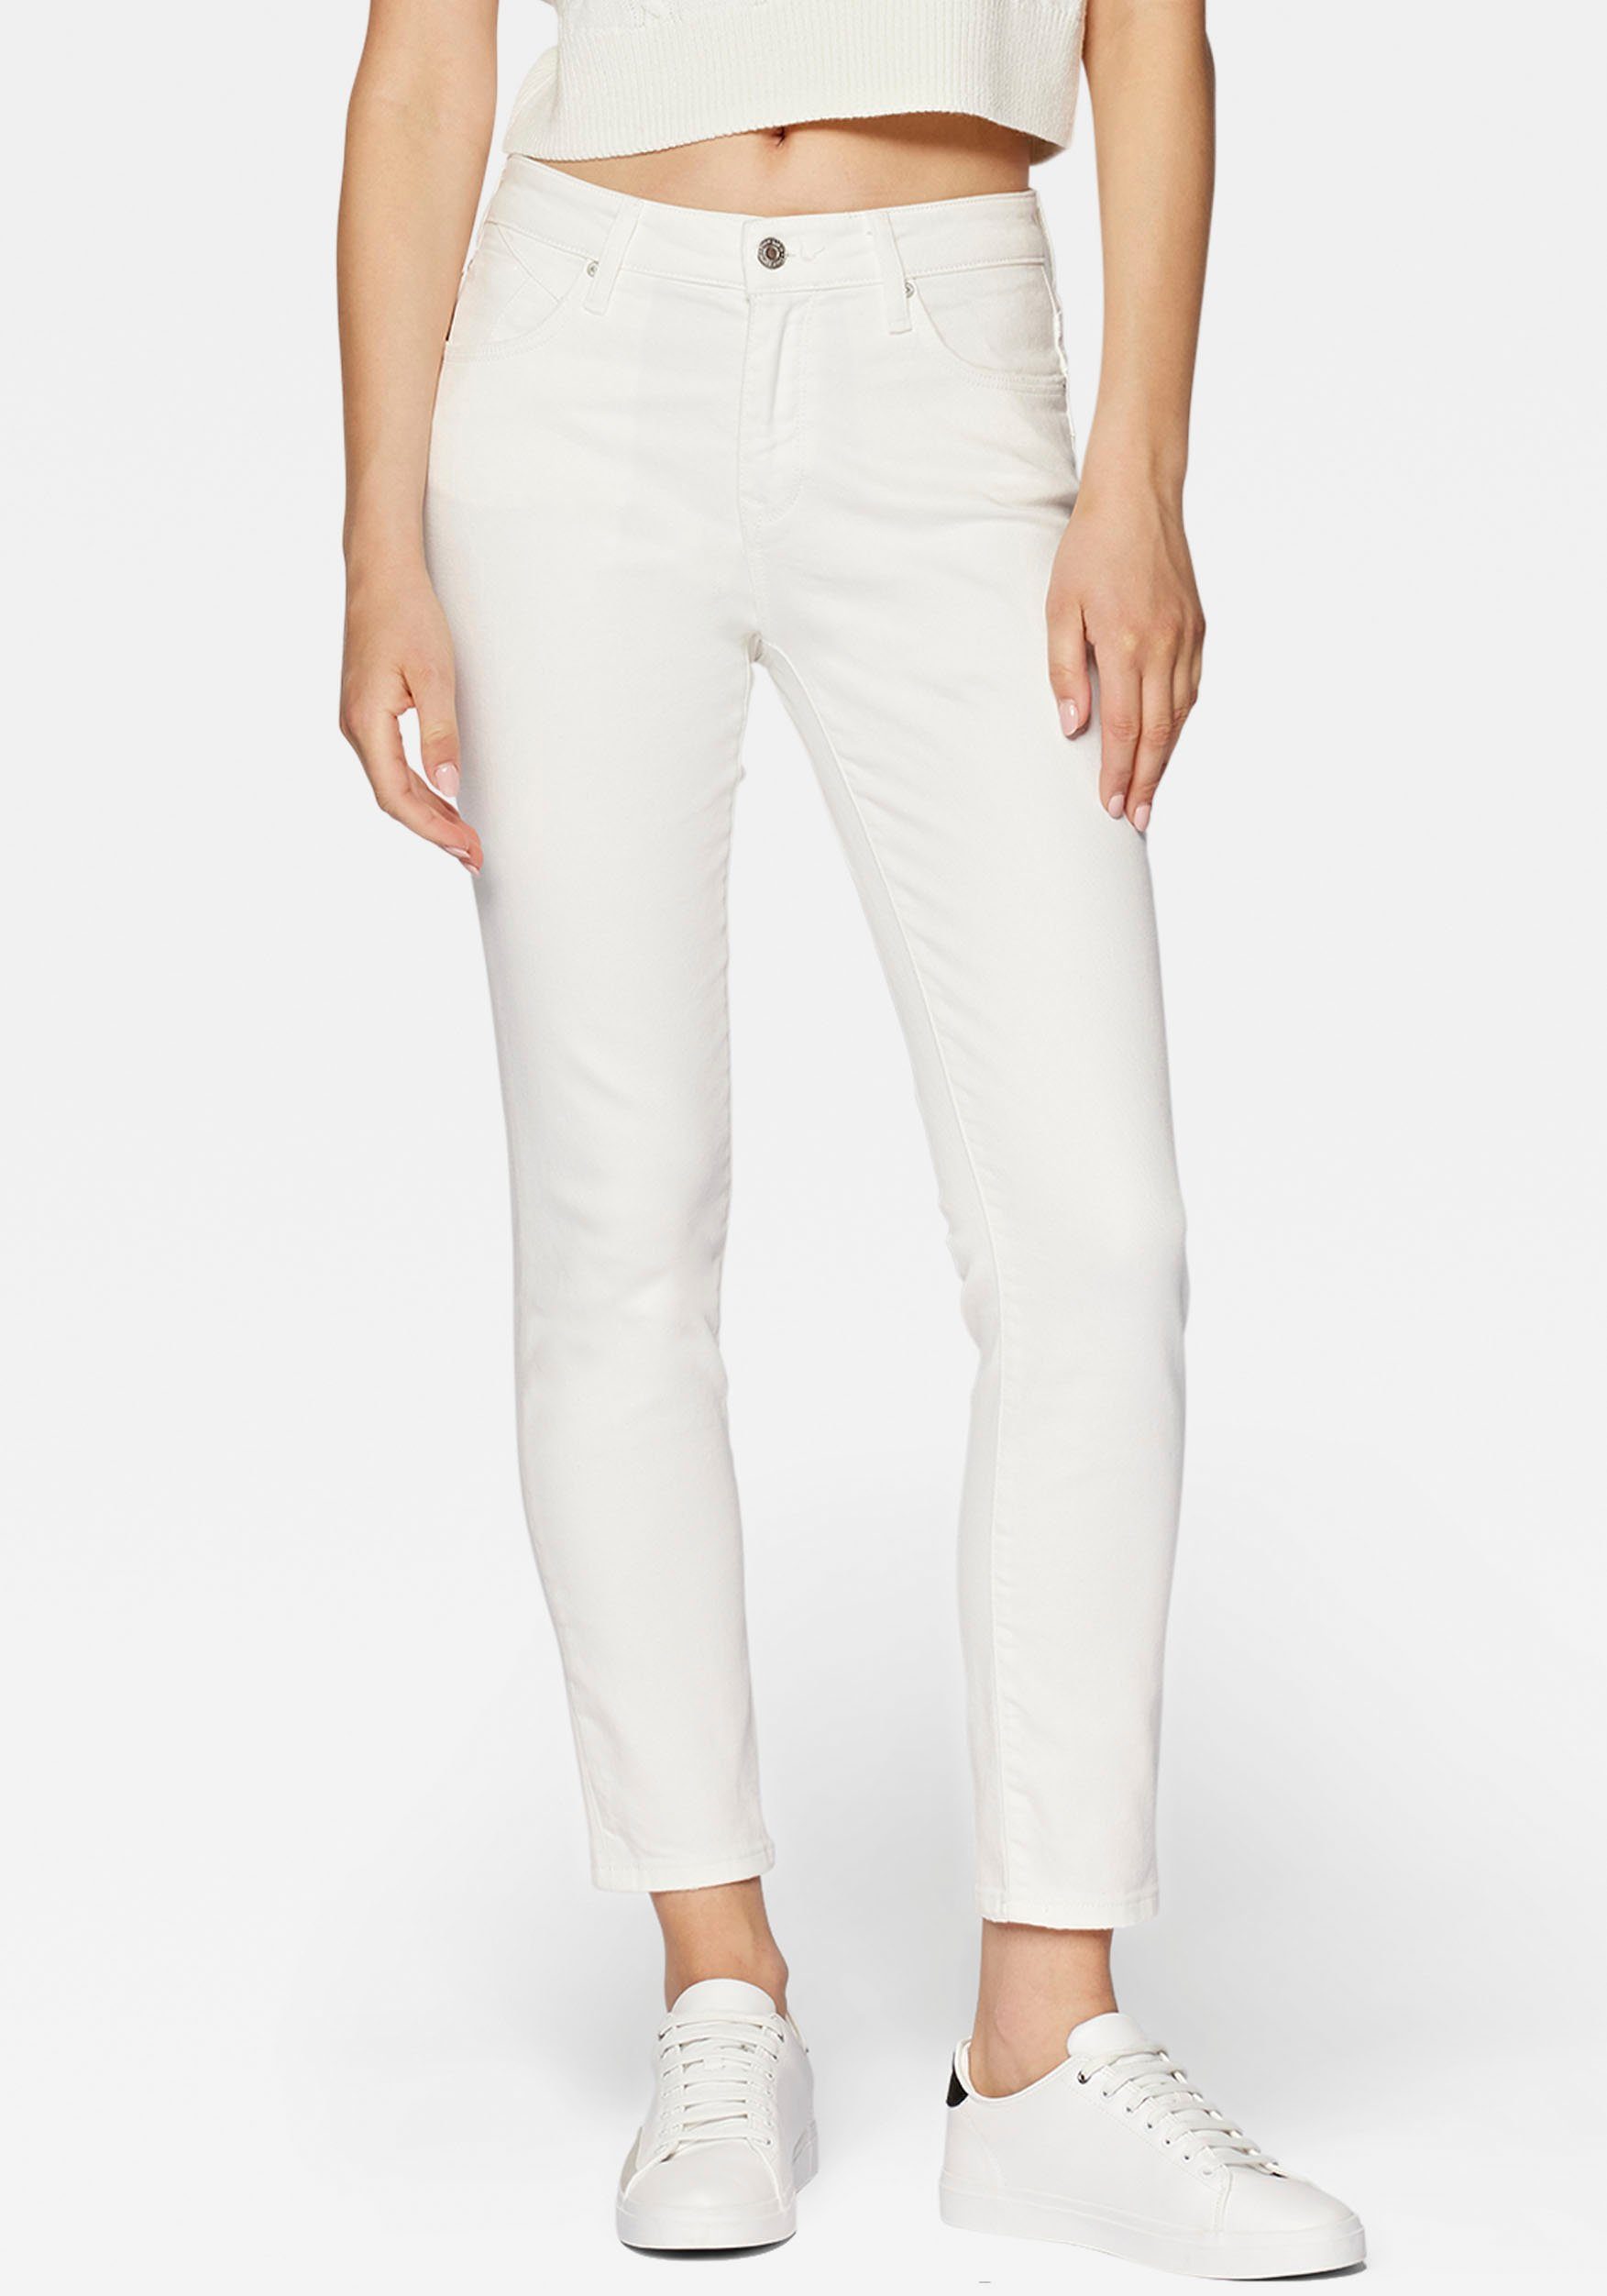 Mavi Slim-fit-Jeans trageangenehmer Stretchdenim dank hochwertiger Verarbeitung white